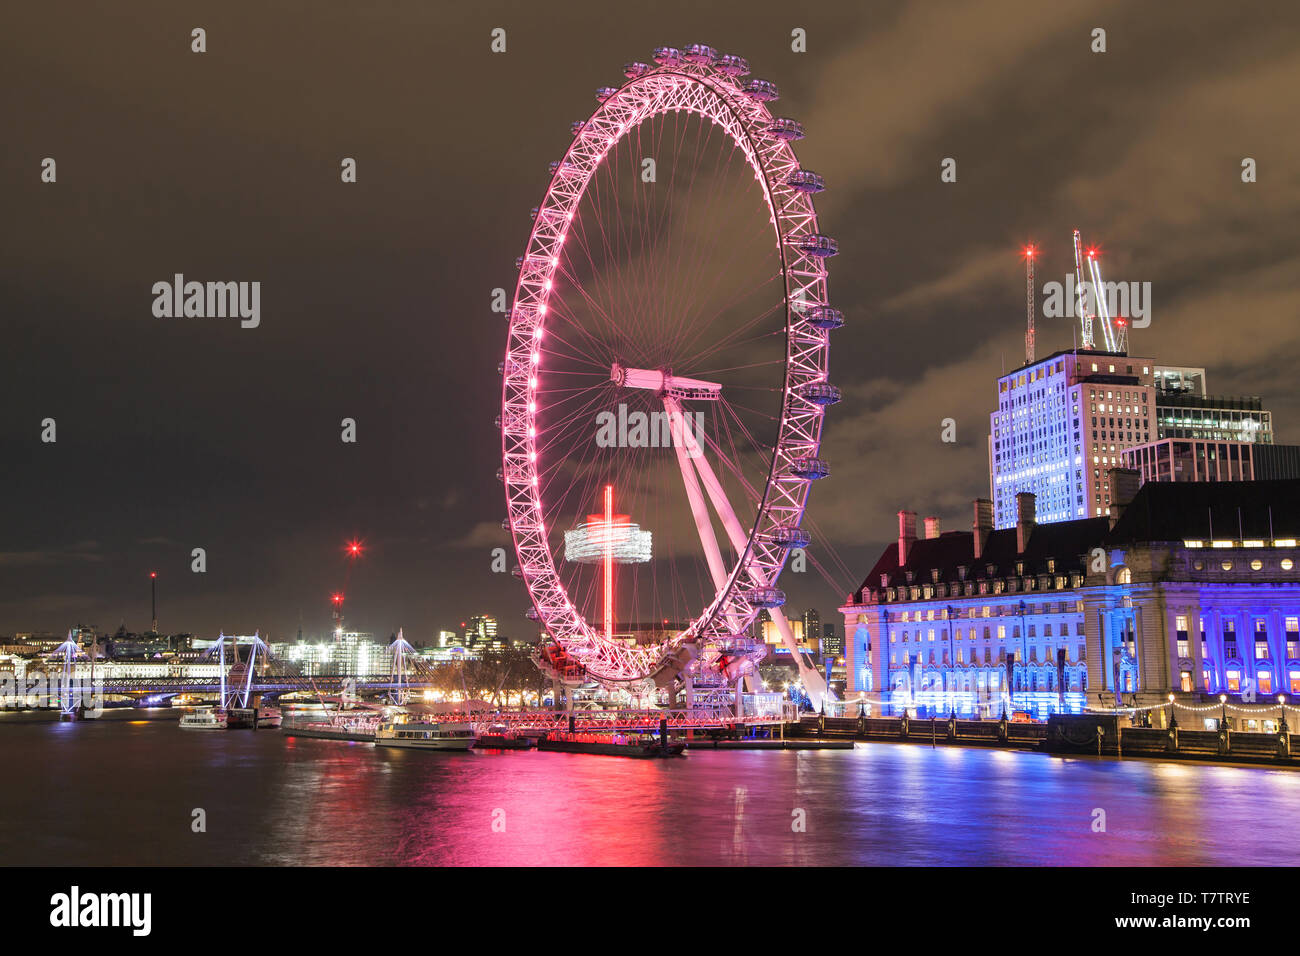 Das London Eye, das Millennium Wheel bei Nacht, London, Vereinigtes Königreich. Stockfoto